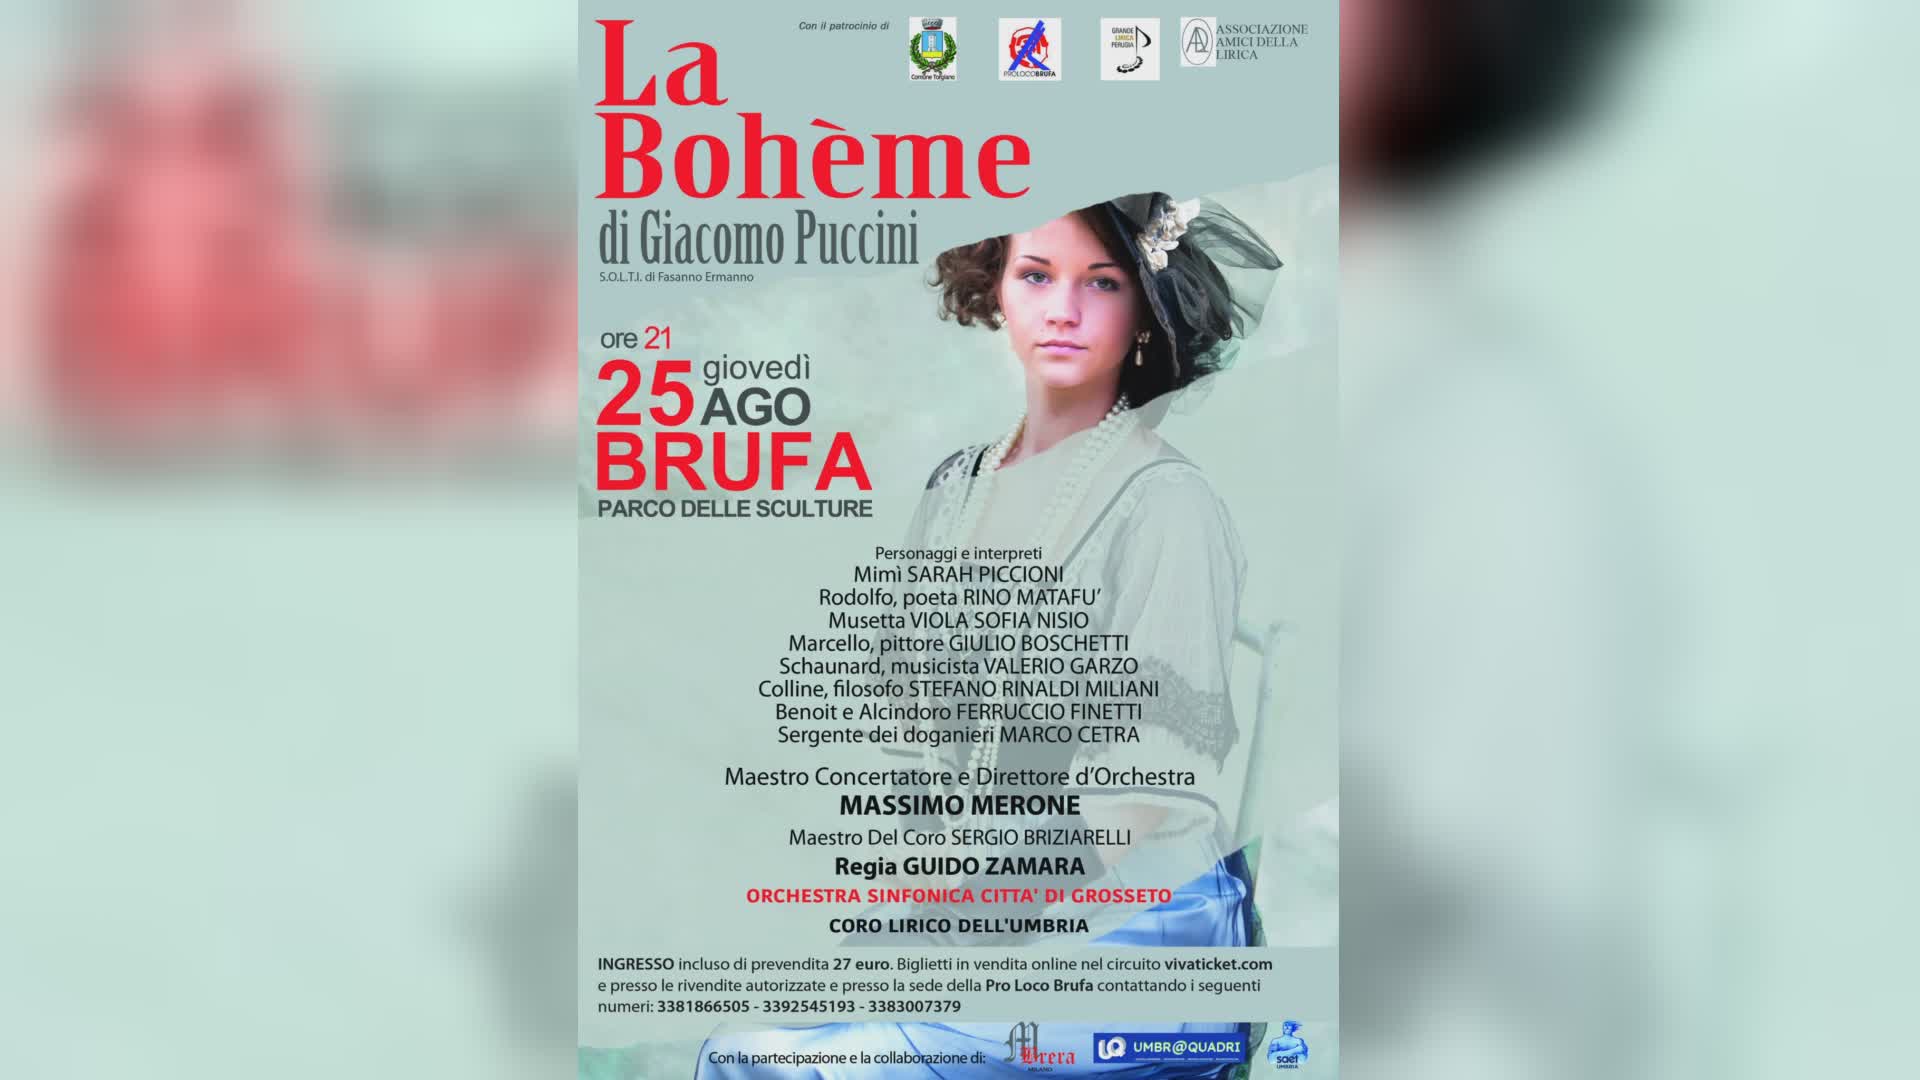 Stasera alle 21 a Brufa sul palco la Boheme di Puccini